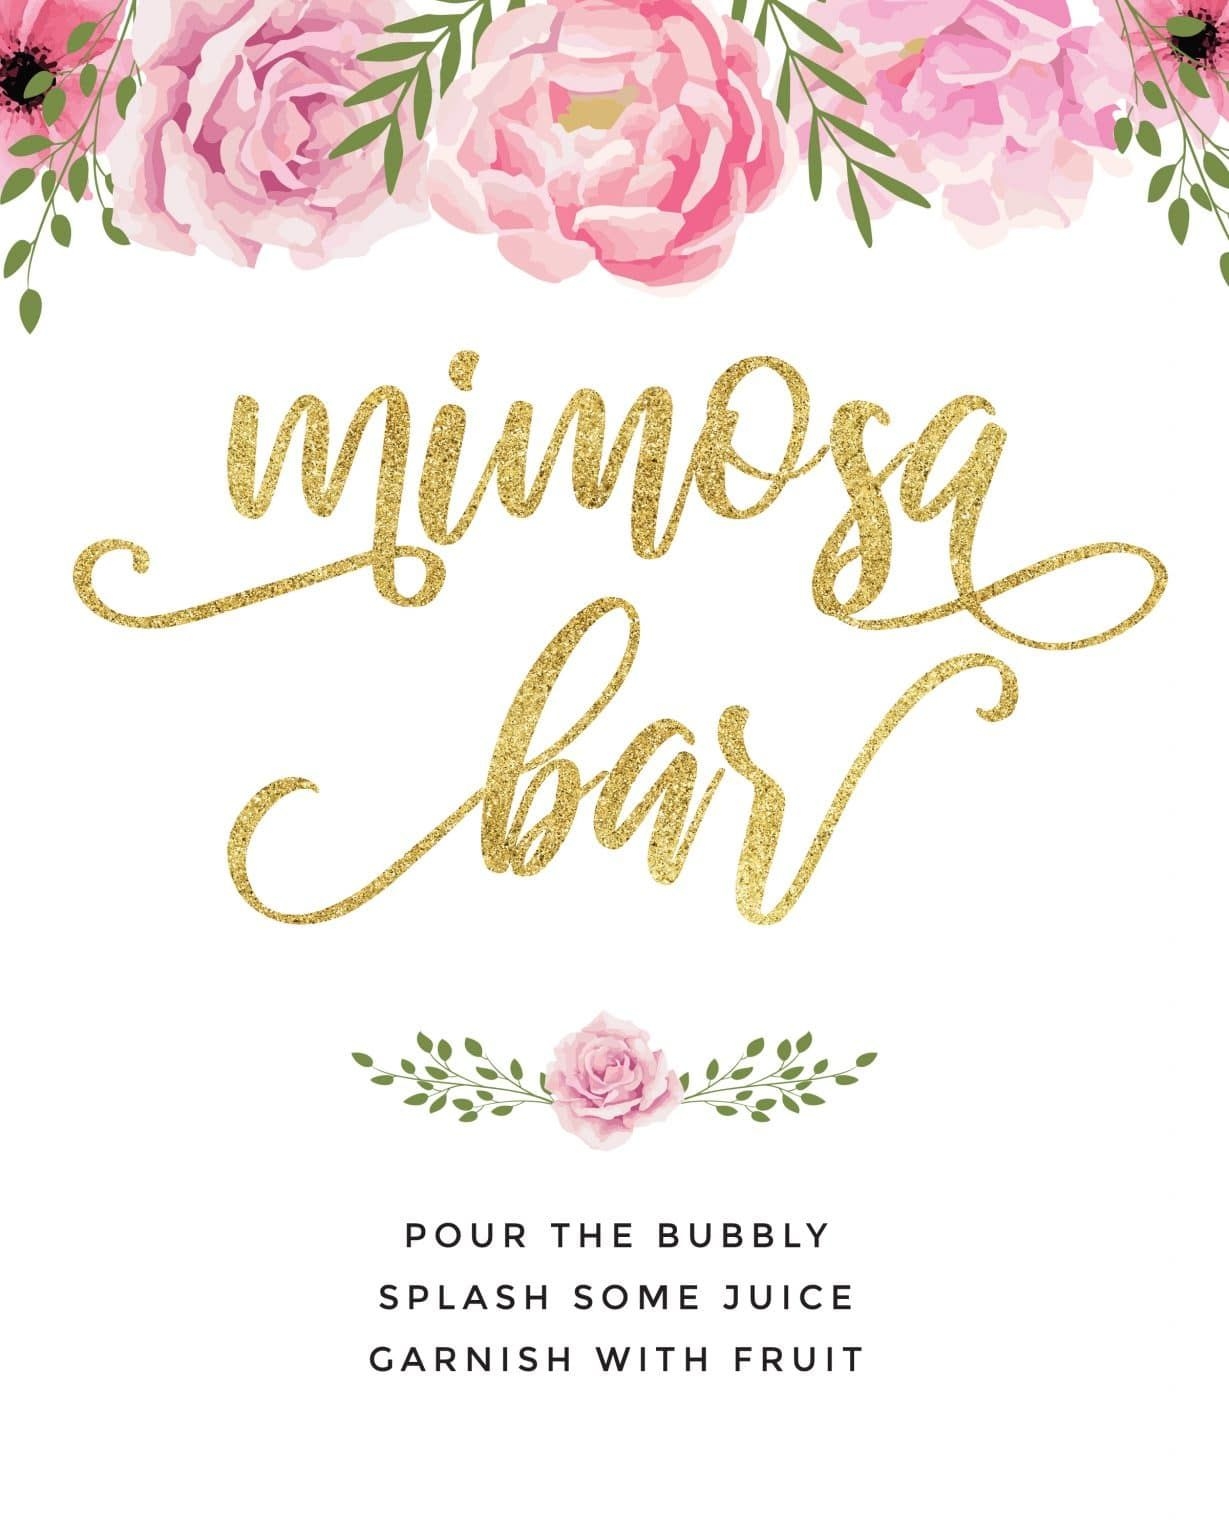 Beautiful Mimosa Bar Sign And Free Printables To Impress Mimosa Bar Sign Mimosa Bar Bridal Shower Bubbly Bar Sign